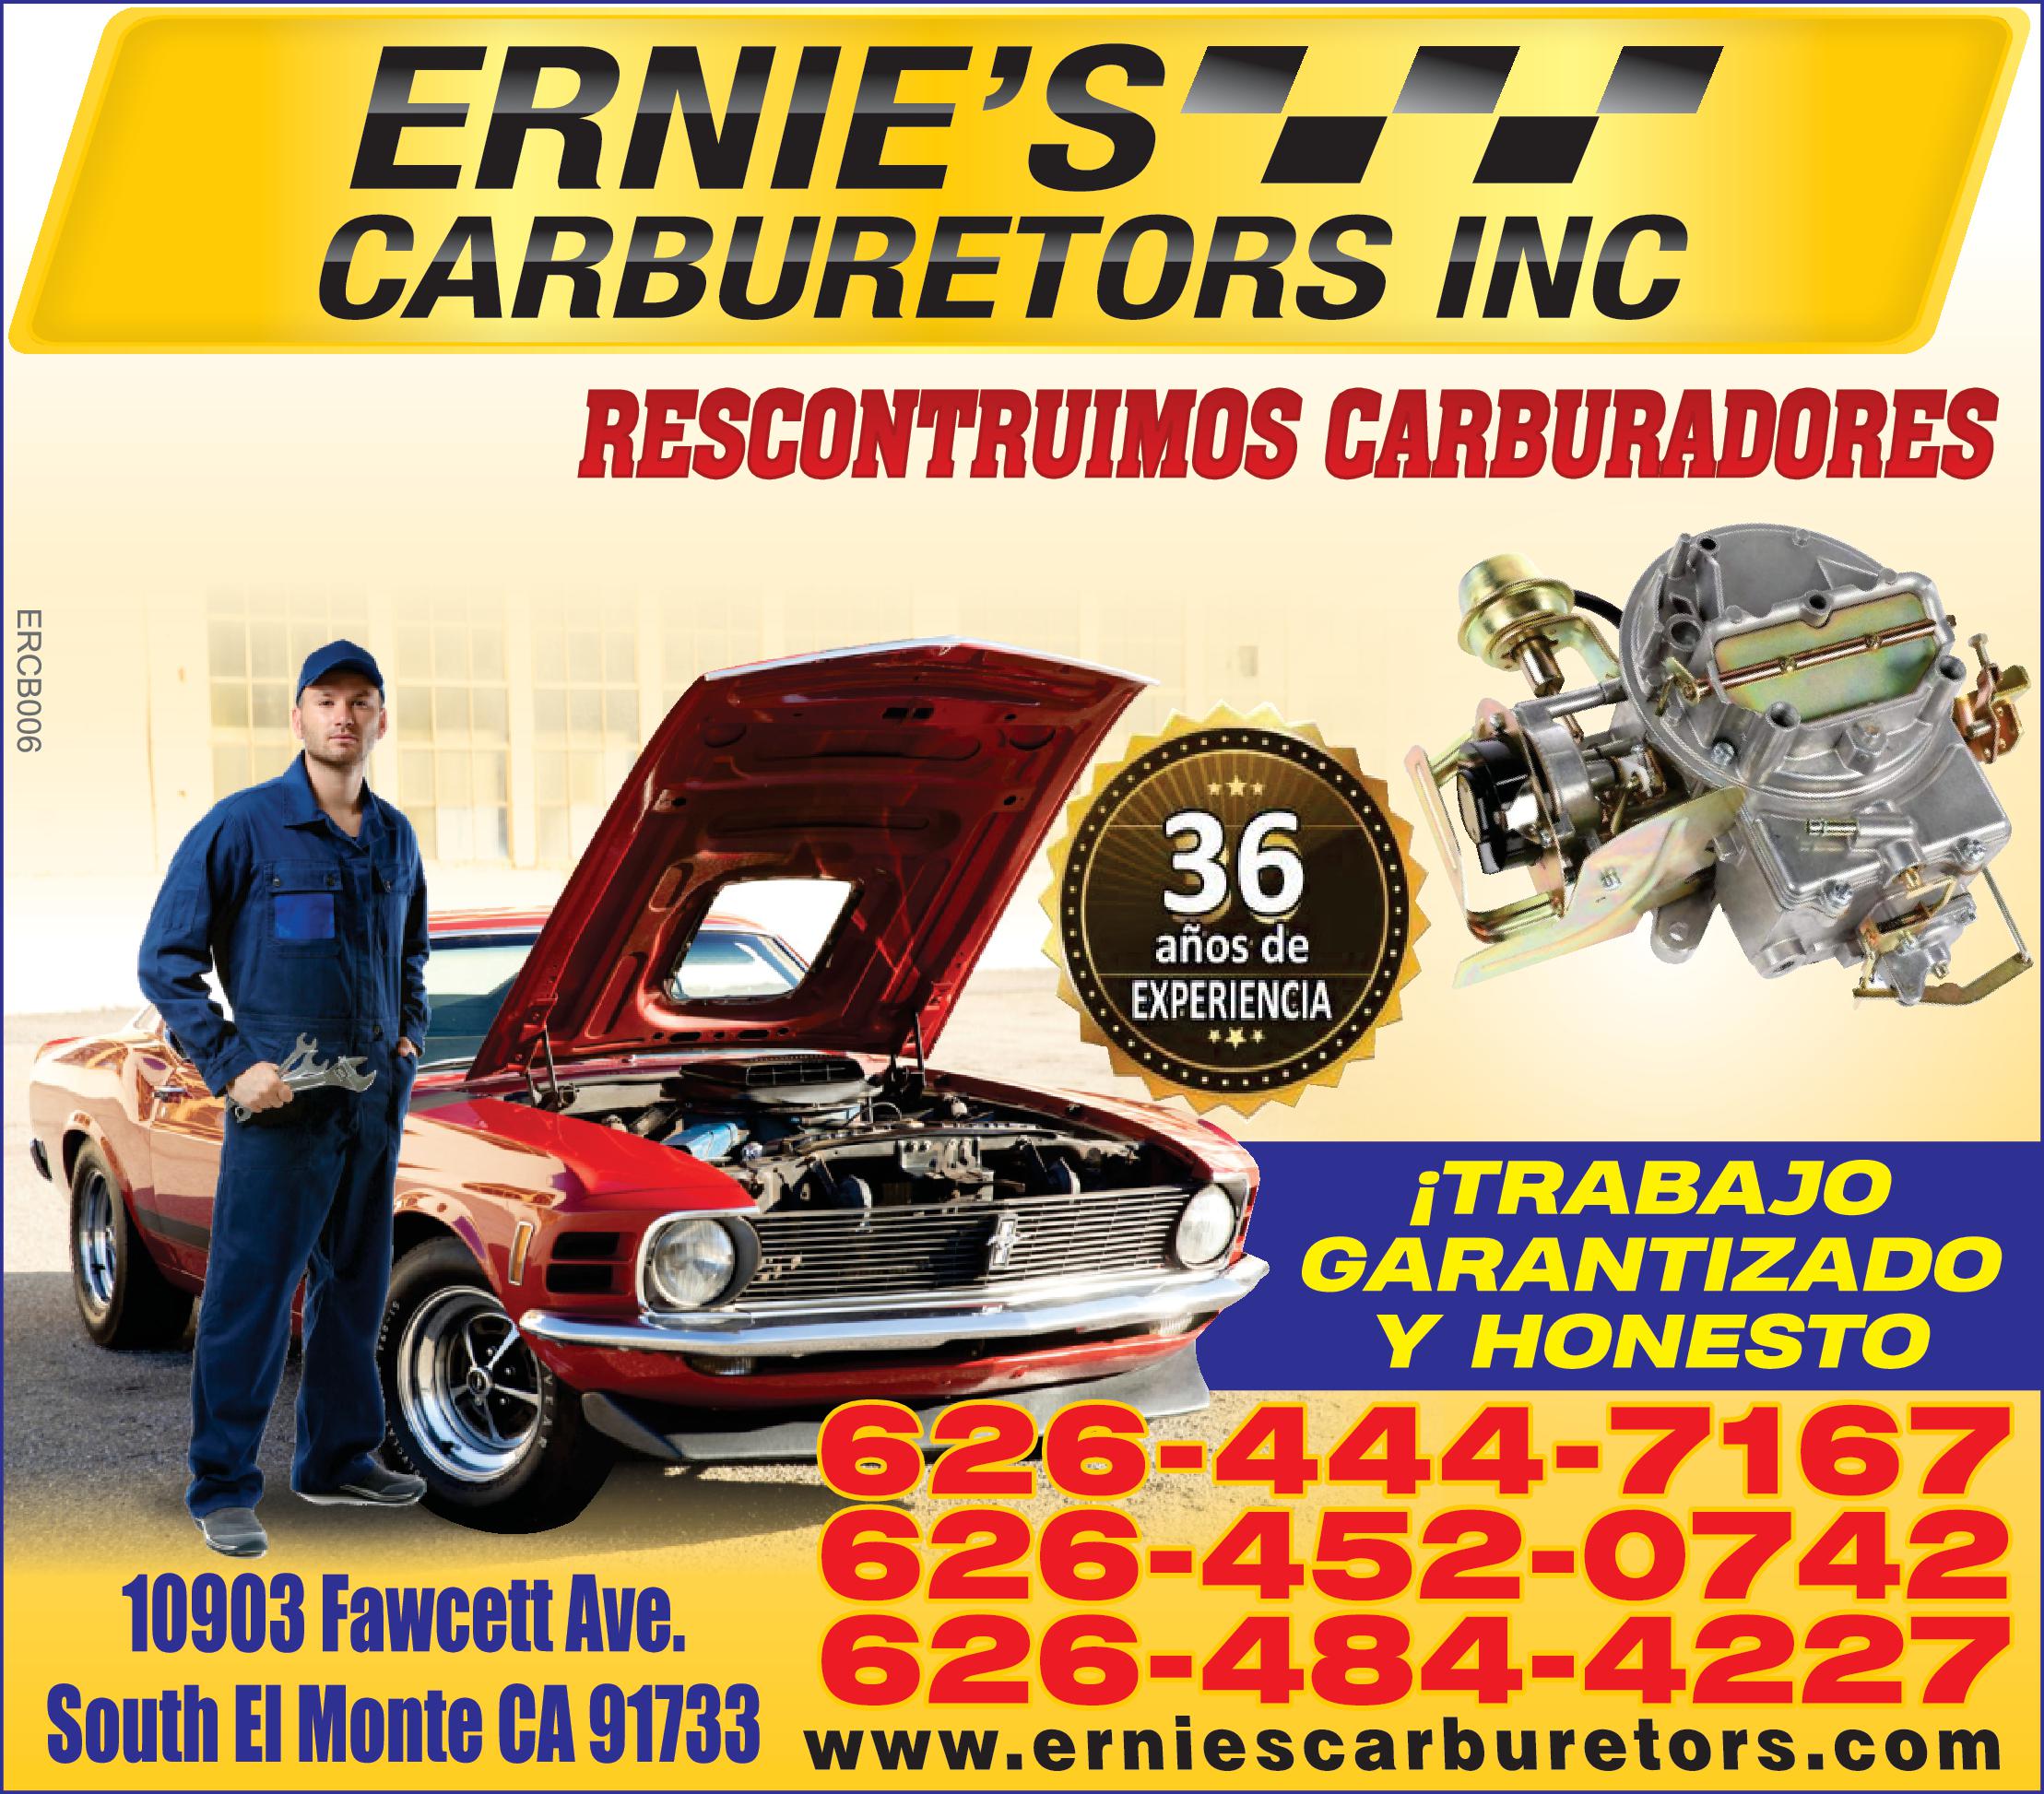 ERNIE'S CARBURETORS INC RECONTRUIMOS CARBURADORES 36 años de EXPERIENCIA TRABAJO GARANTIZADO Y HONESTO 626-444-7167 626-452-0742 626-484-4227 10903 FAWCETT AVE. SOUTH EL MONTE CA 91733 WWW.erniescarburetors.com